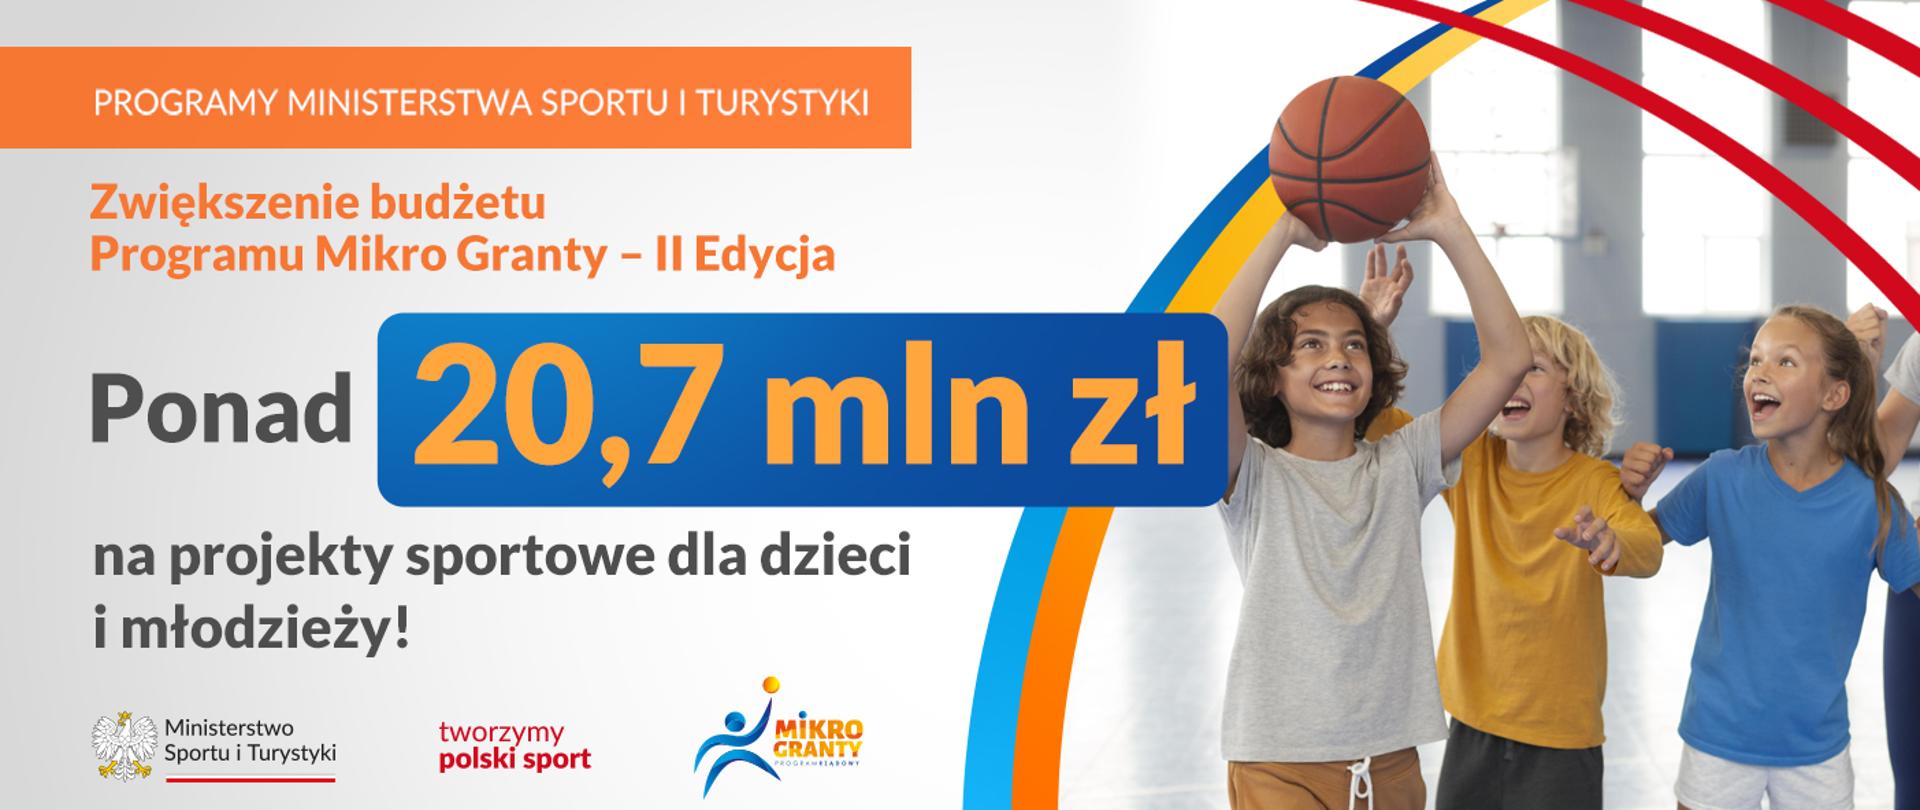 Trójka uśmiechniętych dzieci gra w koszykówkę. Obok napis o treści zwiększenie budżetu Programu Mikro Granty - II Edycja. Ponad 20,7 mln zł na projekty sportowe dla dzieci i młodzieży.